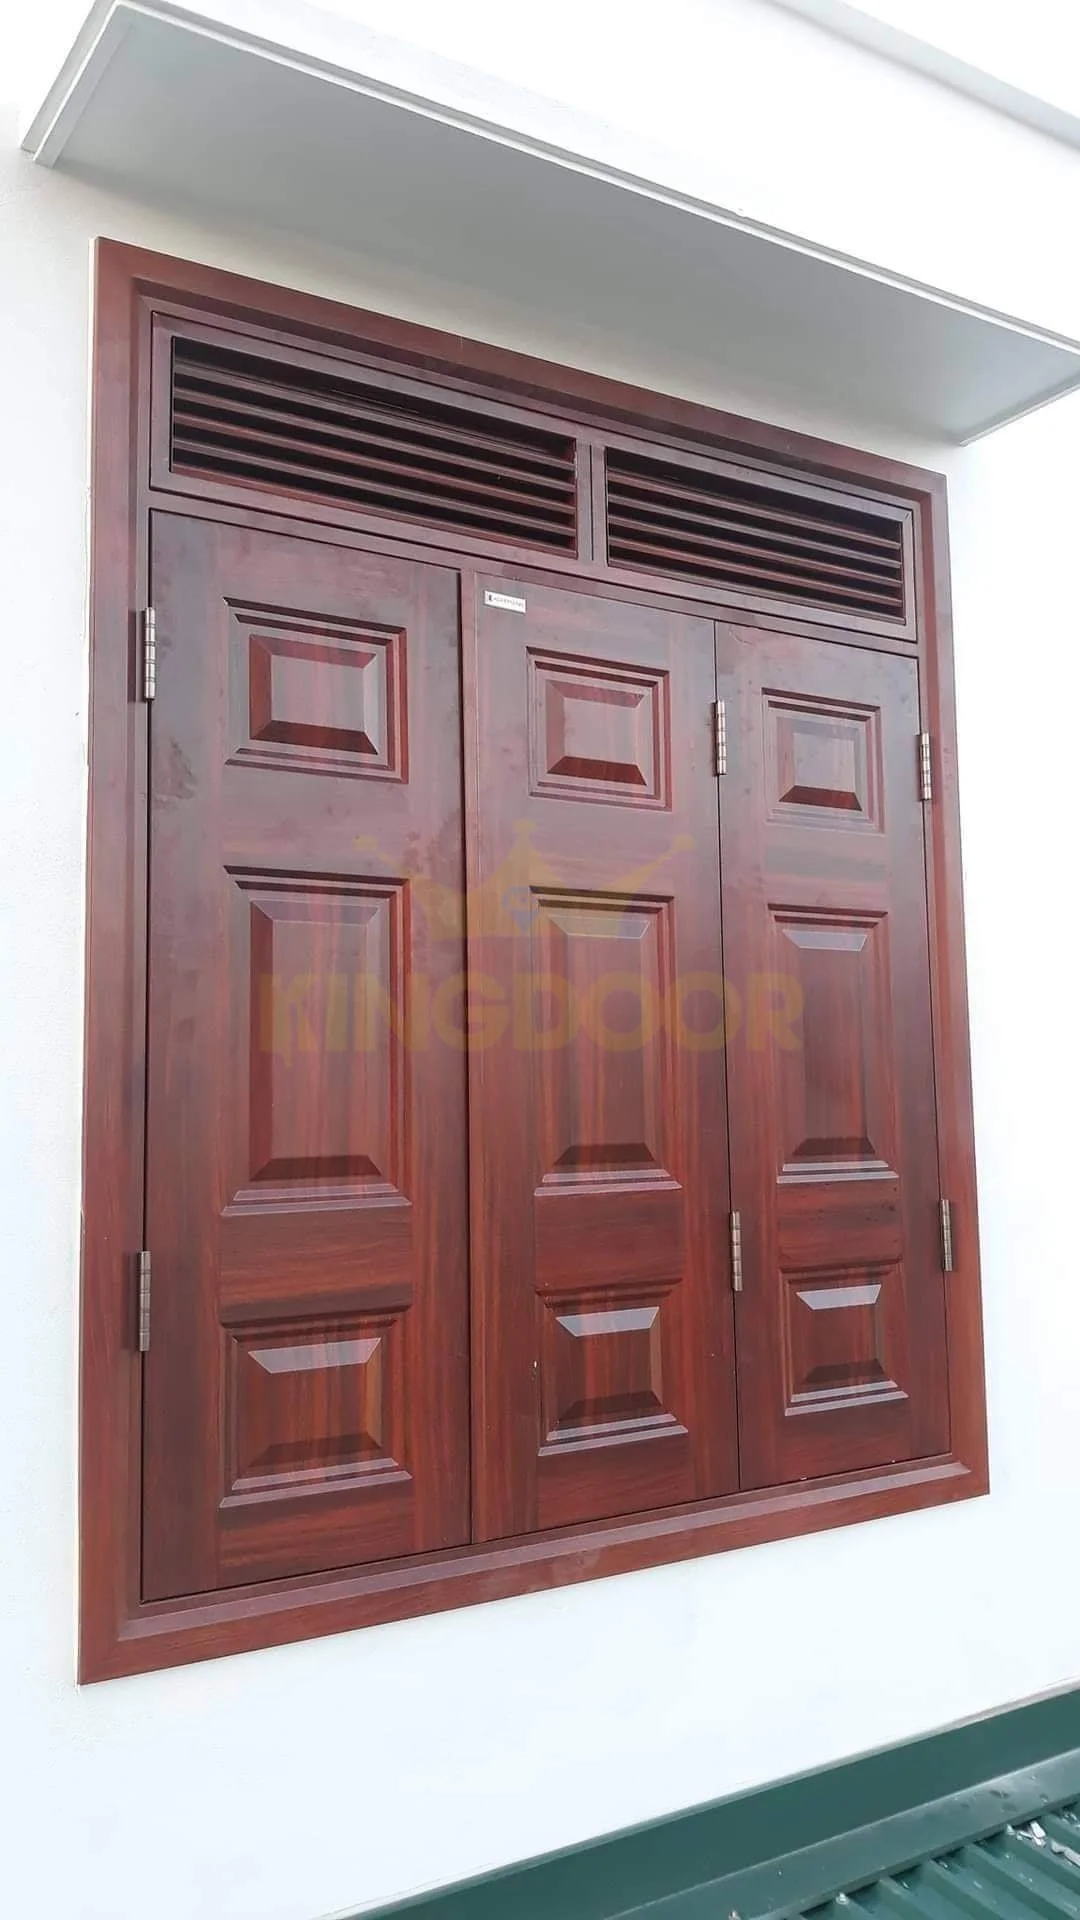 Nội, ngoại thất: Báo giá Cửa thép vân gỗ tại Đà Lạt – Cửa chính, cửa sổ Cua-so-thep-van-go-tai-Da-Lat